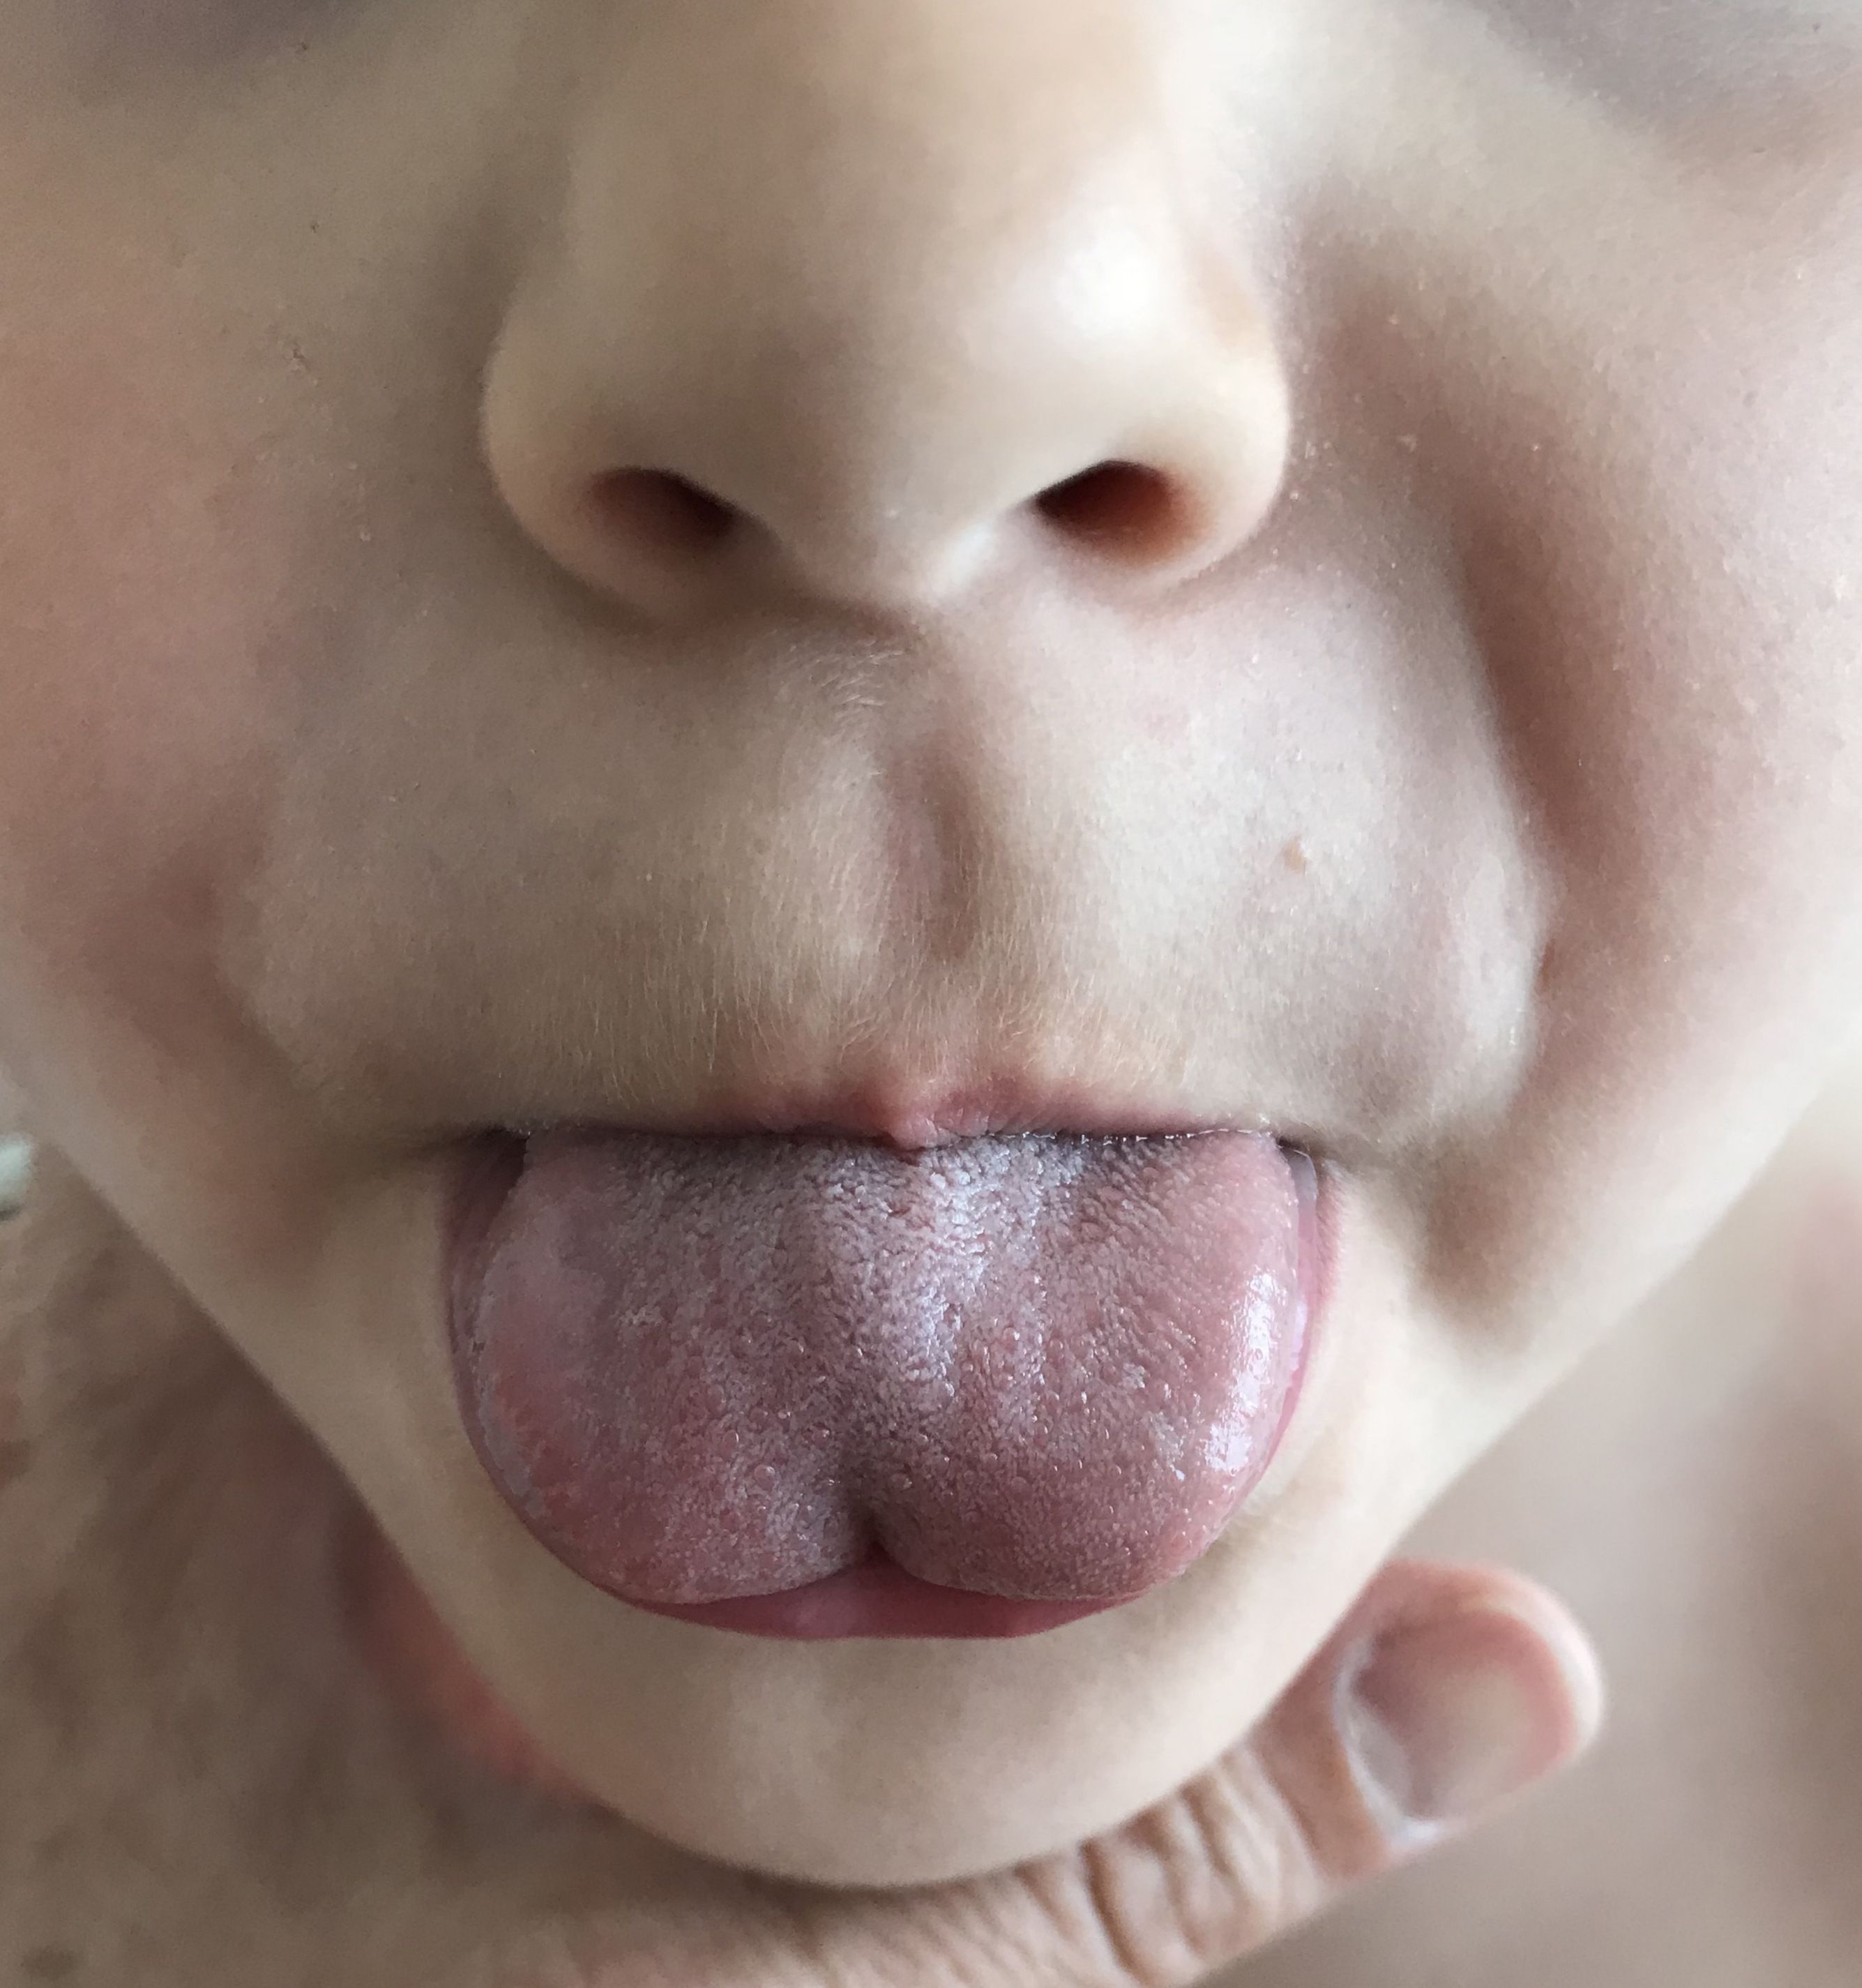 Heart-shaped deformity of the tongue due to ankyloglossia.